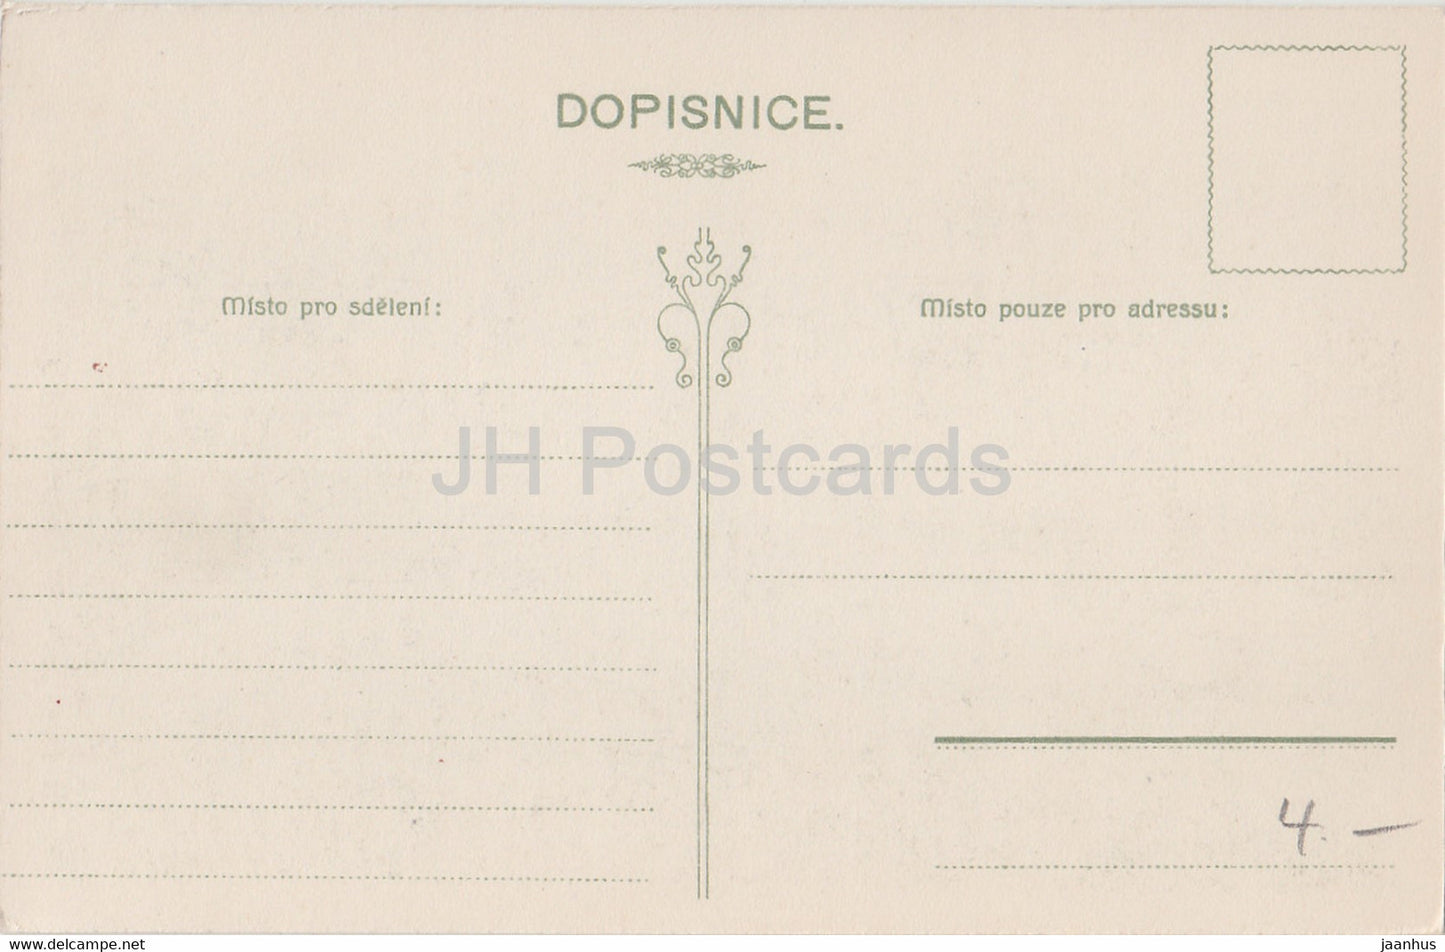 Nove Mesto - Pohled s Petrina - Depose 2 - carte postale ancienne - République tchèque - inutilisée